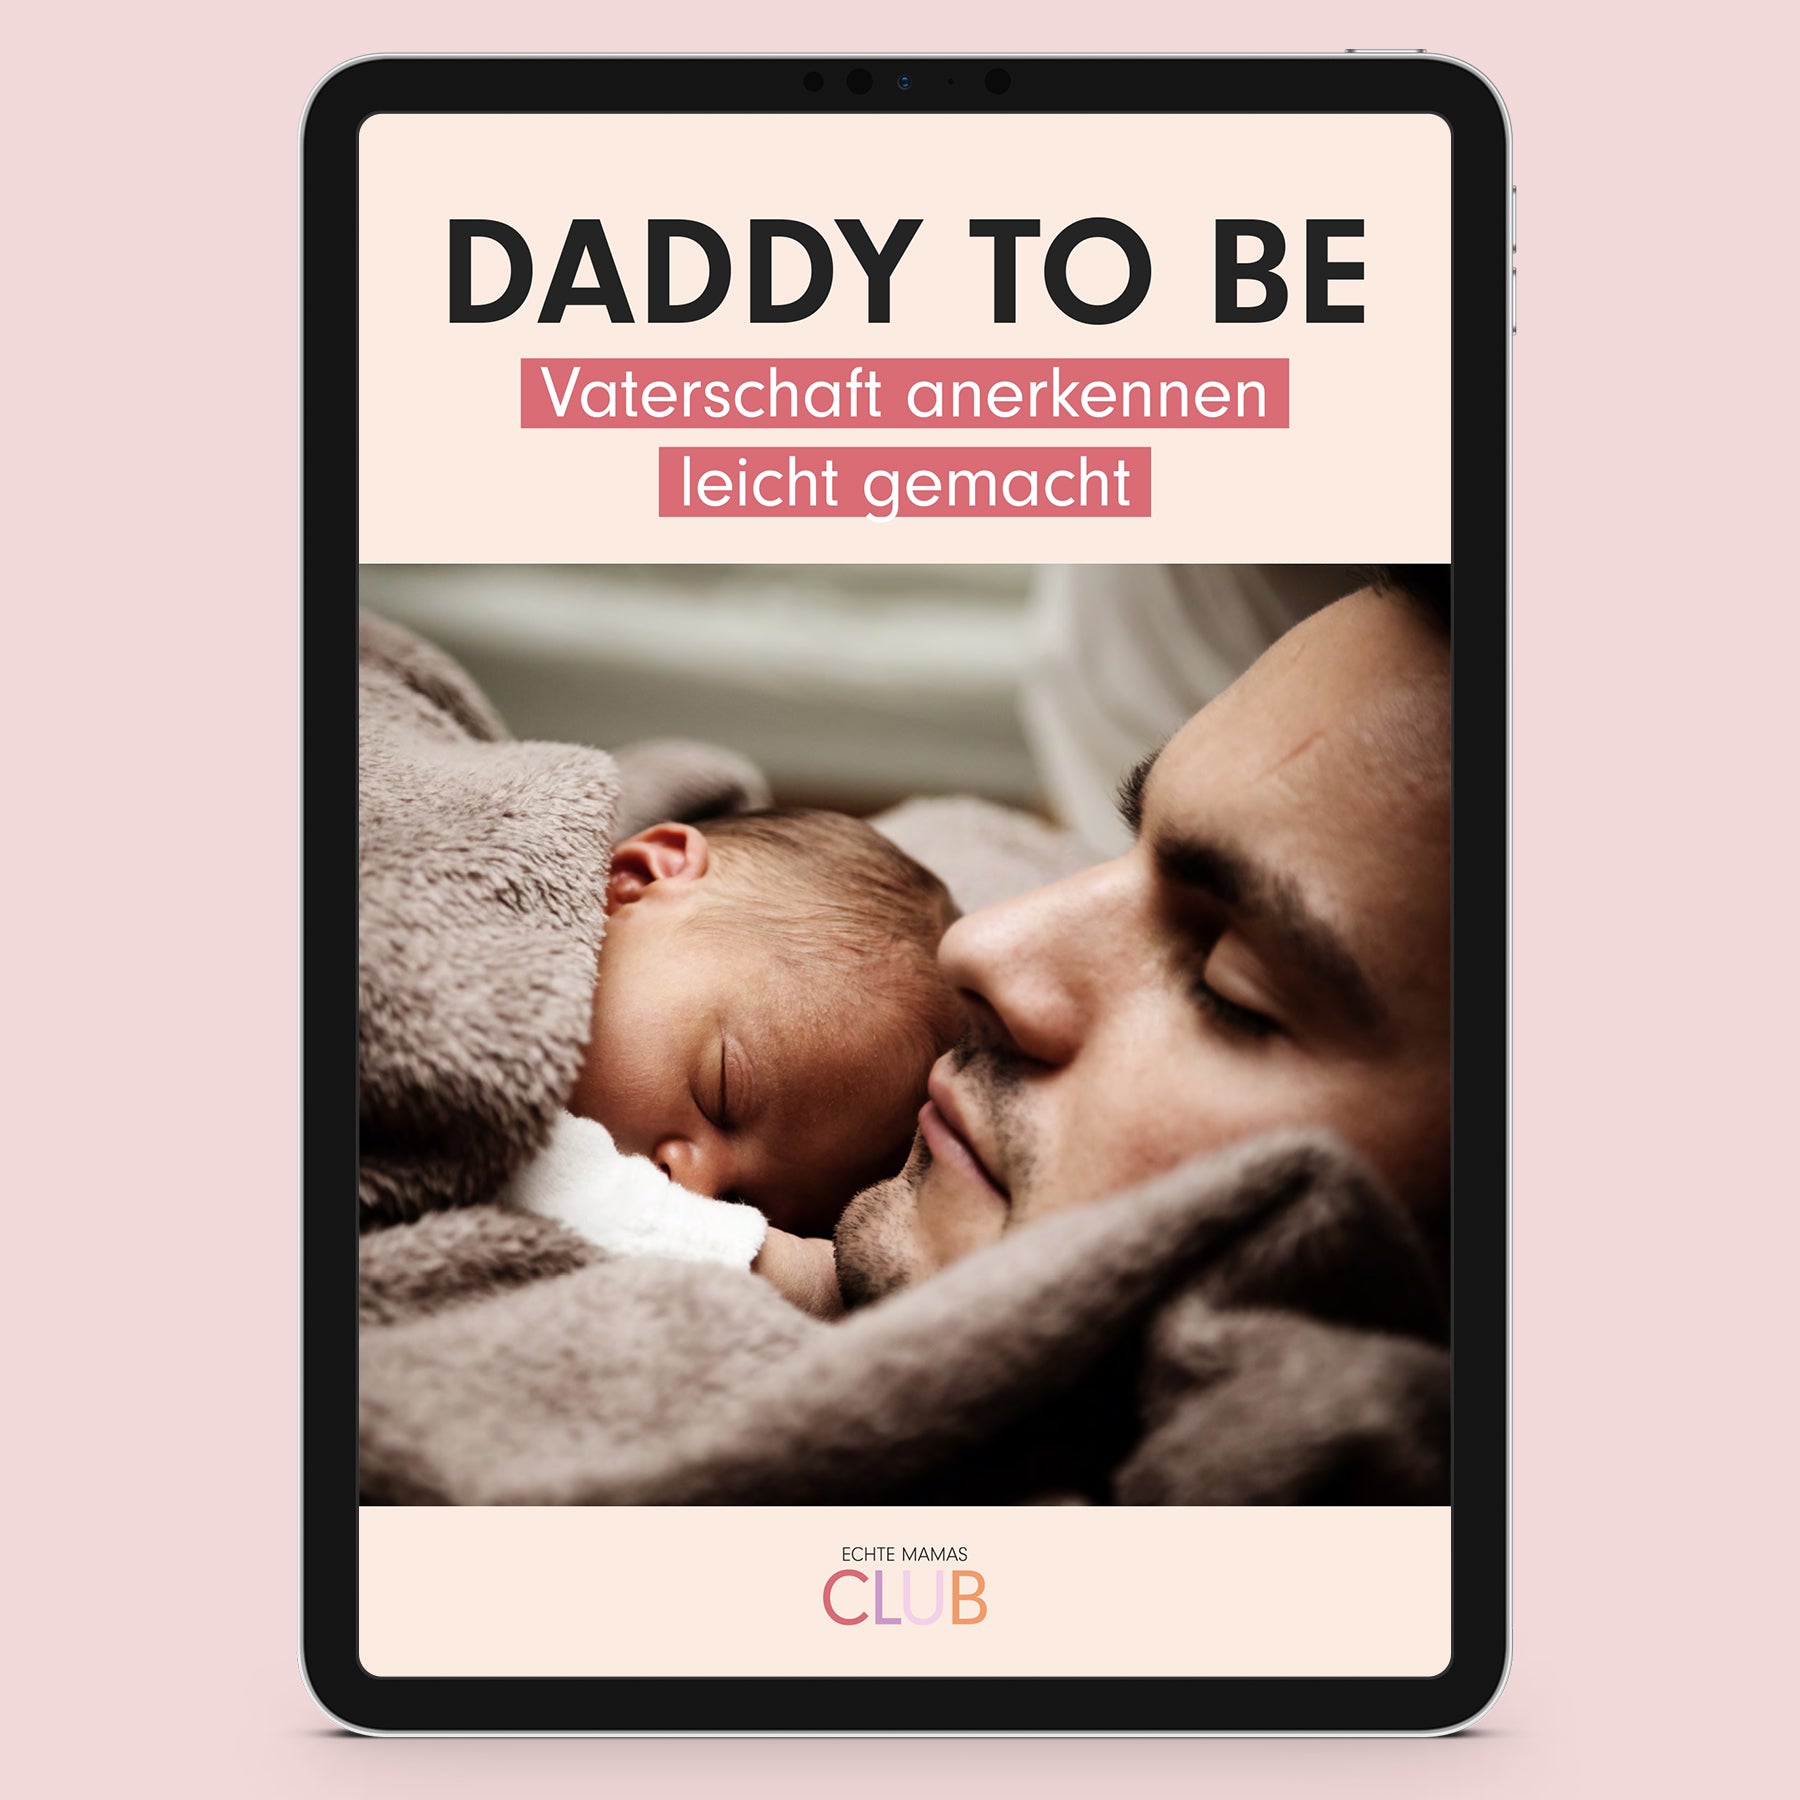 Ebook: DADDY TO BE – VATERSCHAFT ANERKENNEN LEICHT GEMACHT